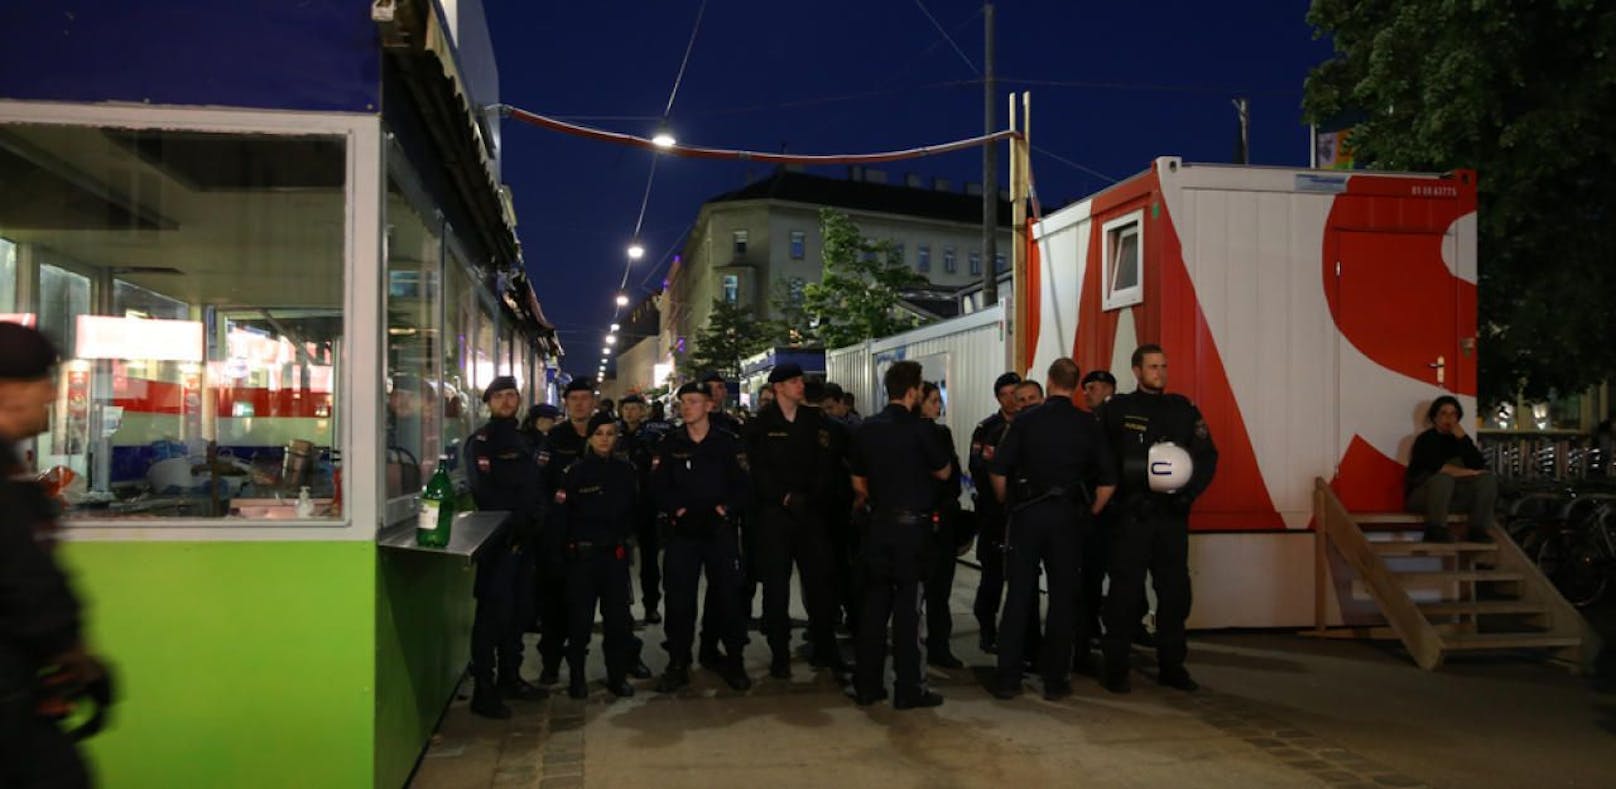 Die Polizei marschierte in großer Zahl zur Nachtwache am Brunnenmarkt auf. 